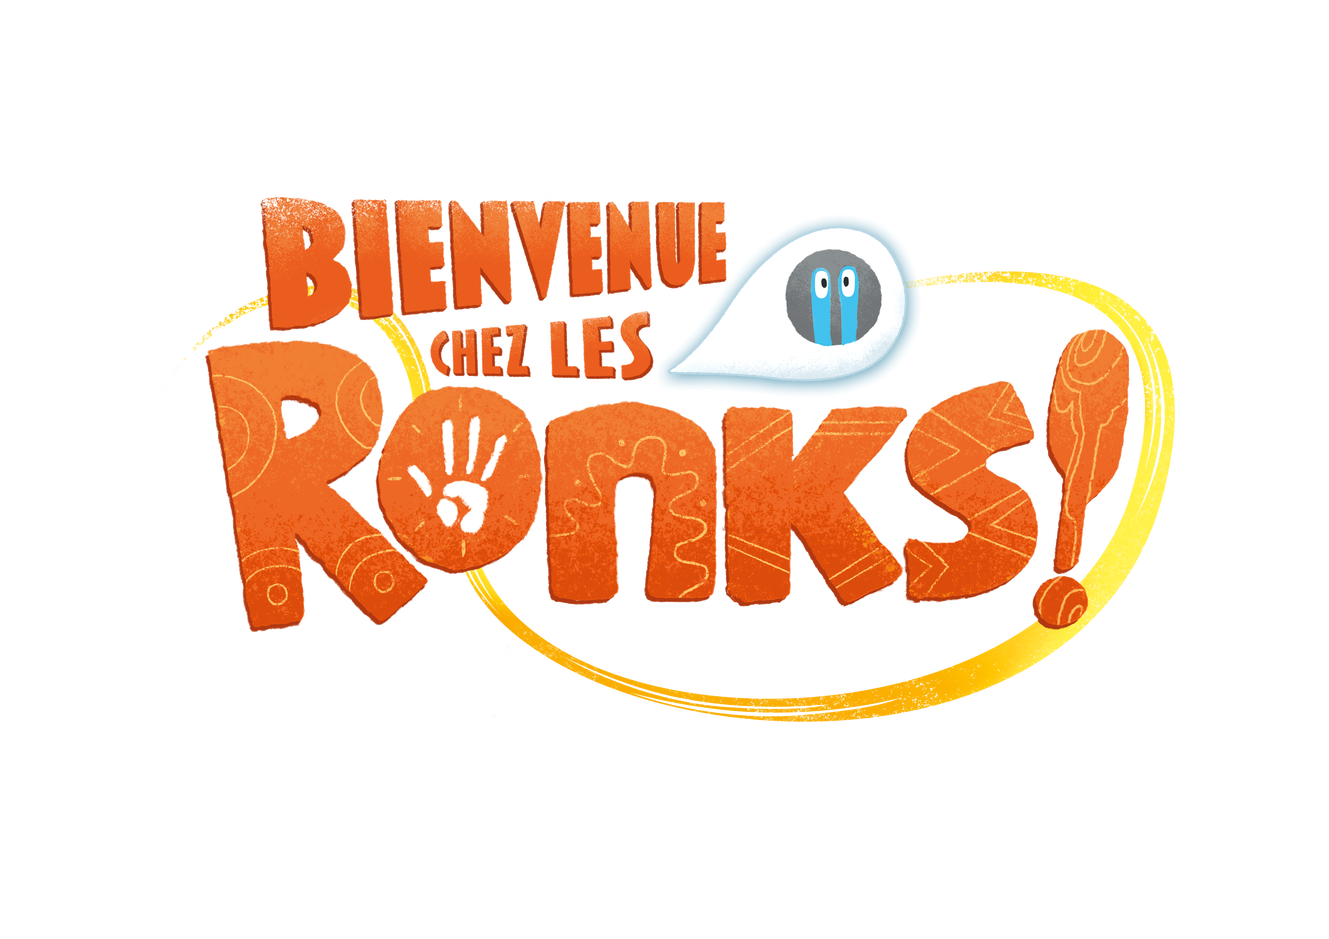 Bienvenue chez les Ronks logo